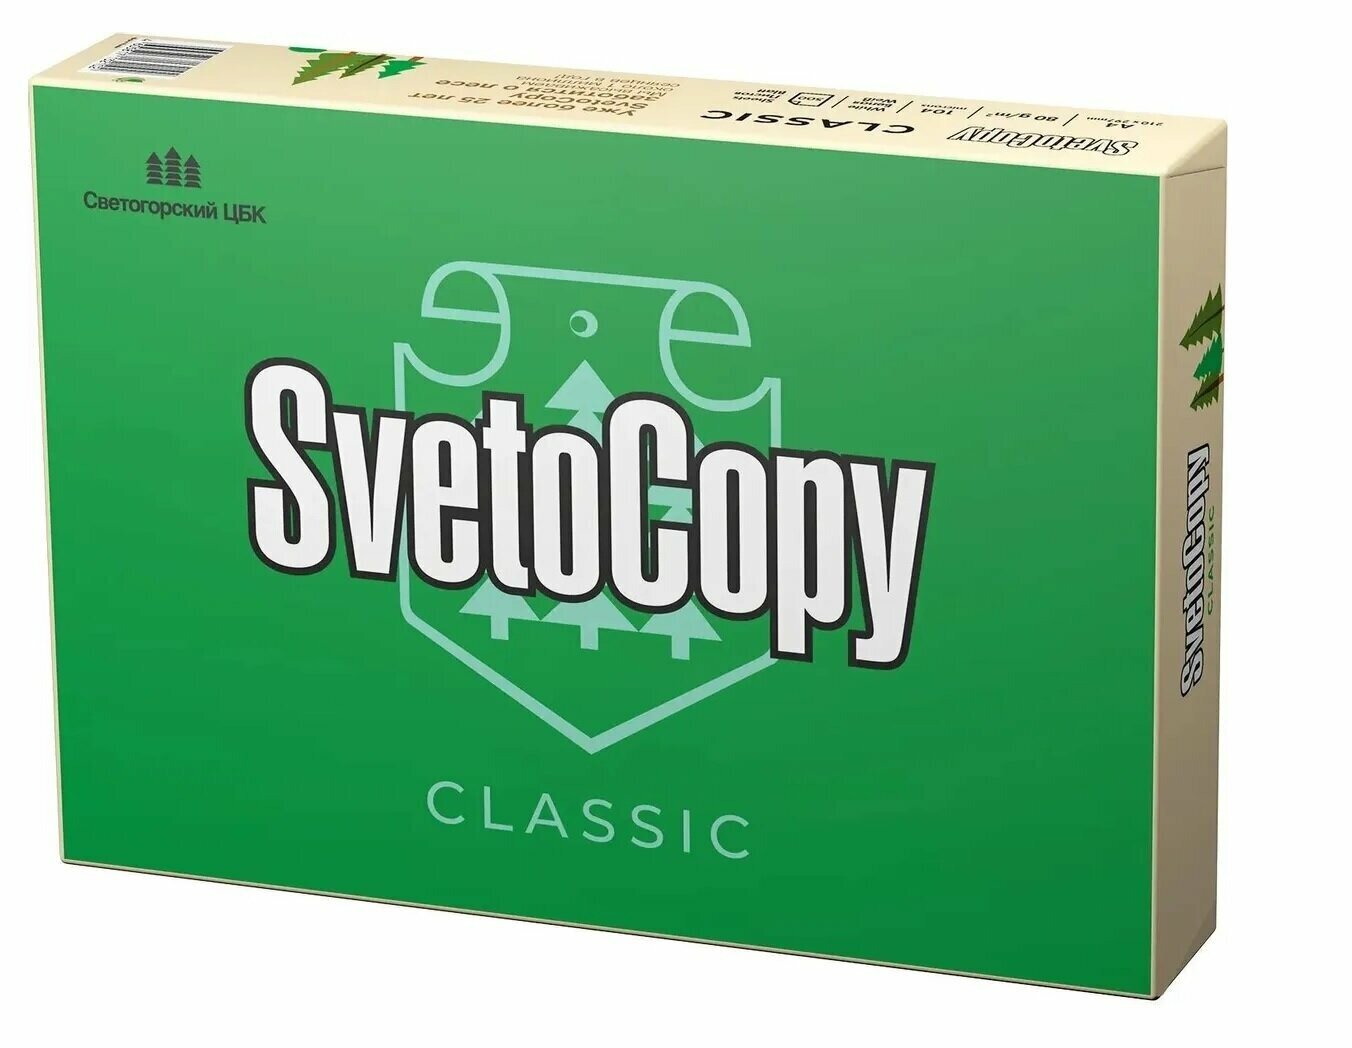 Бумага для печати Sveto Copy - фото №1